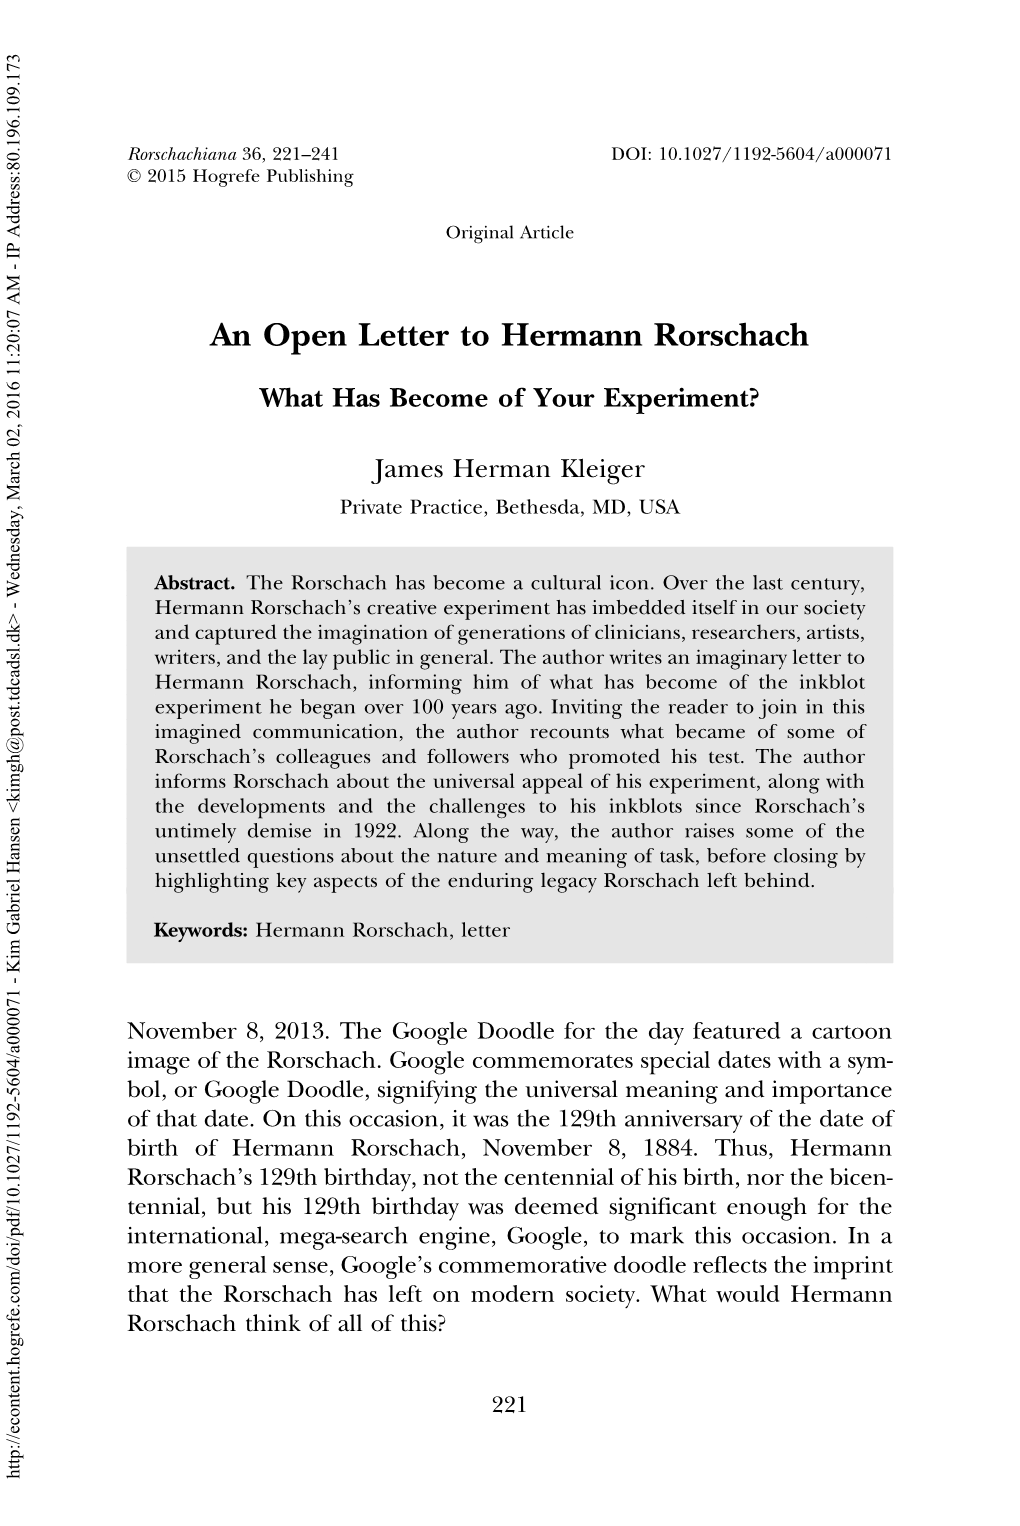 An Open Letter to Hermann Rorschach